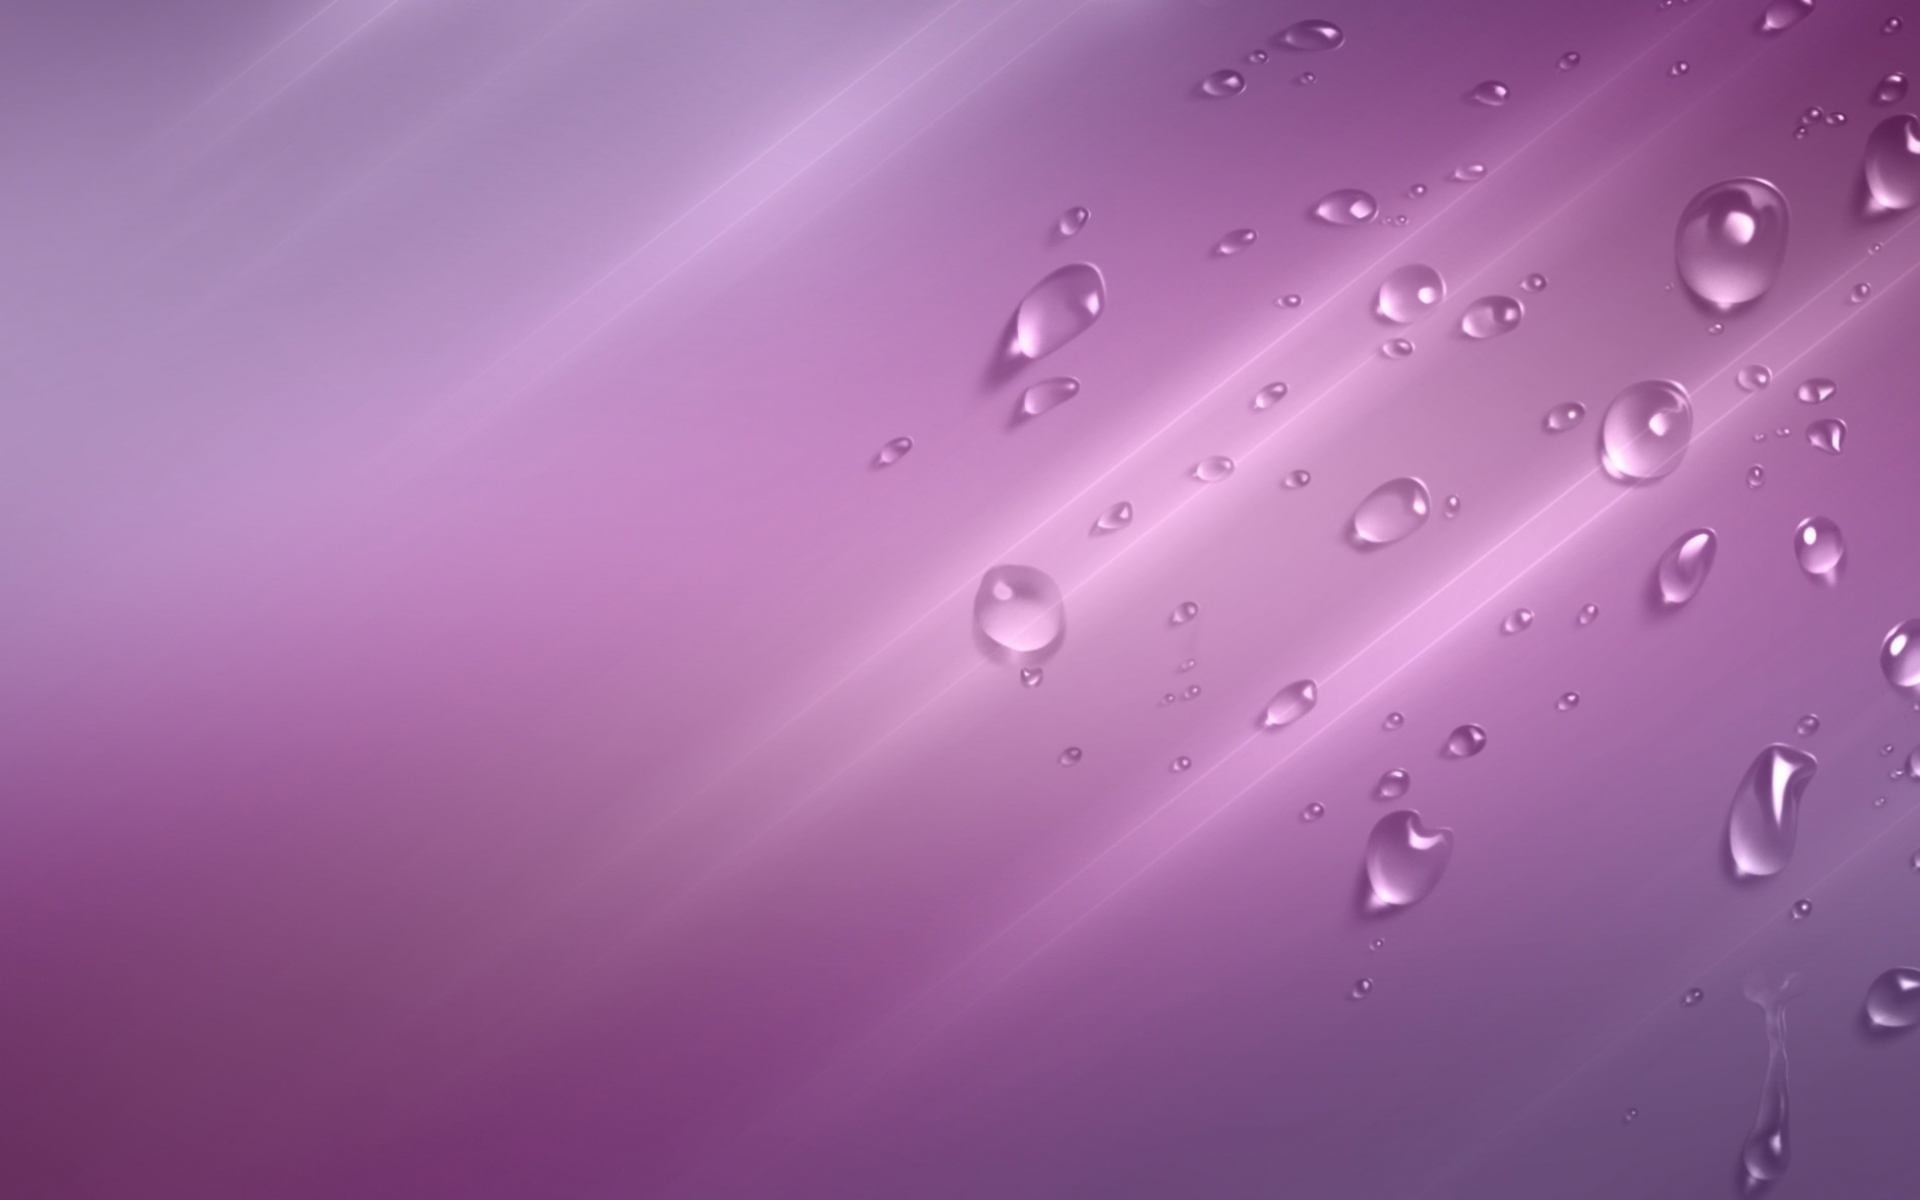 drops, background, violet Image for desktop